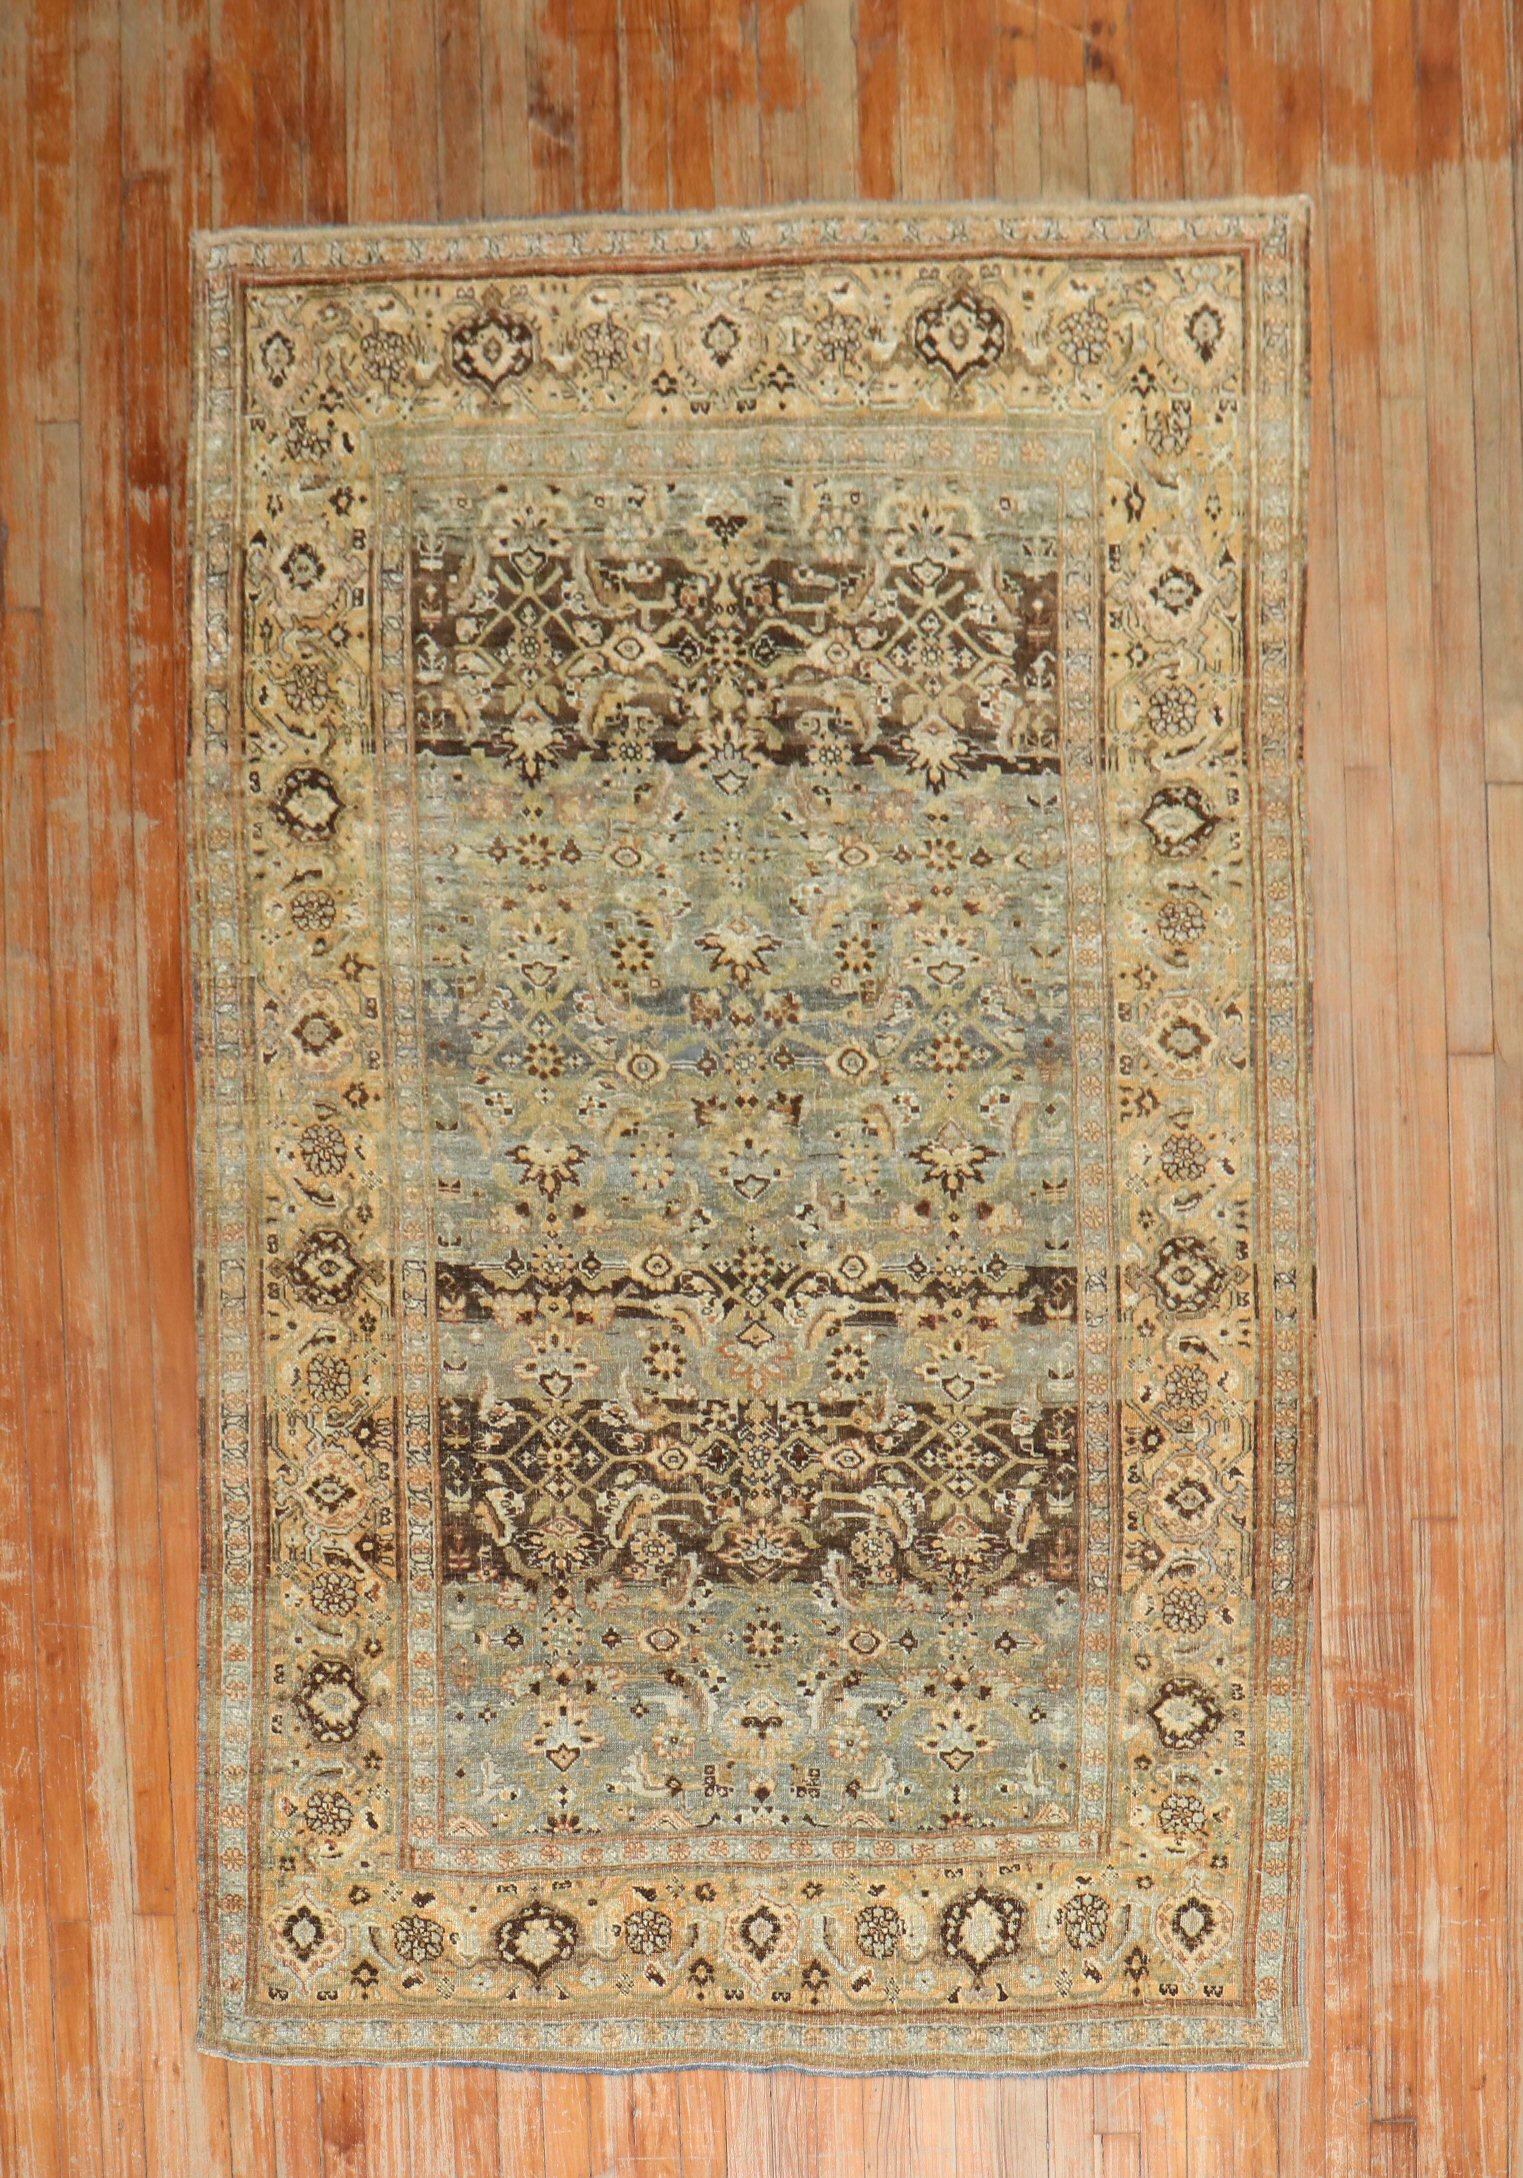 Early 20th-century Persian Bidjar rug.

Measures: 4'7'' x 7'2''.

